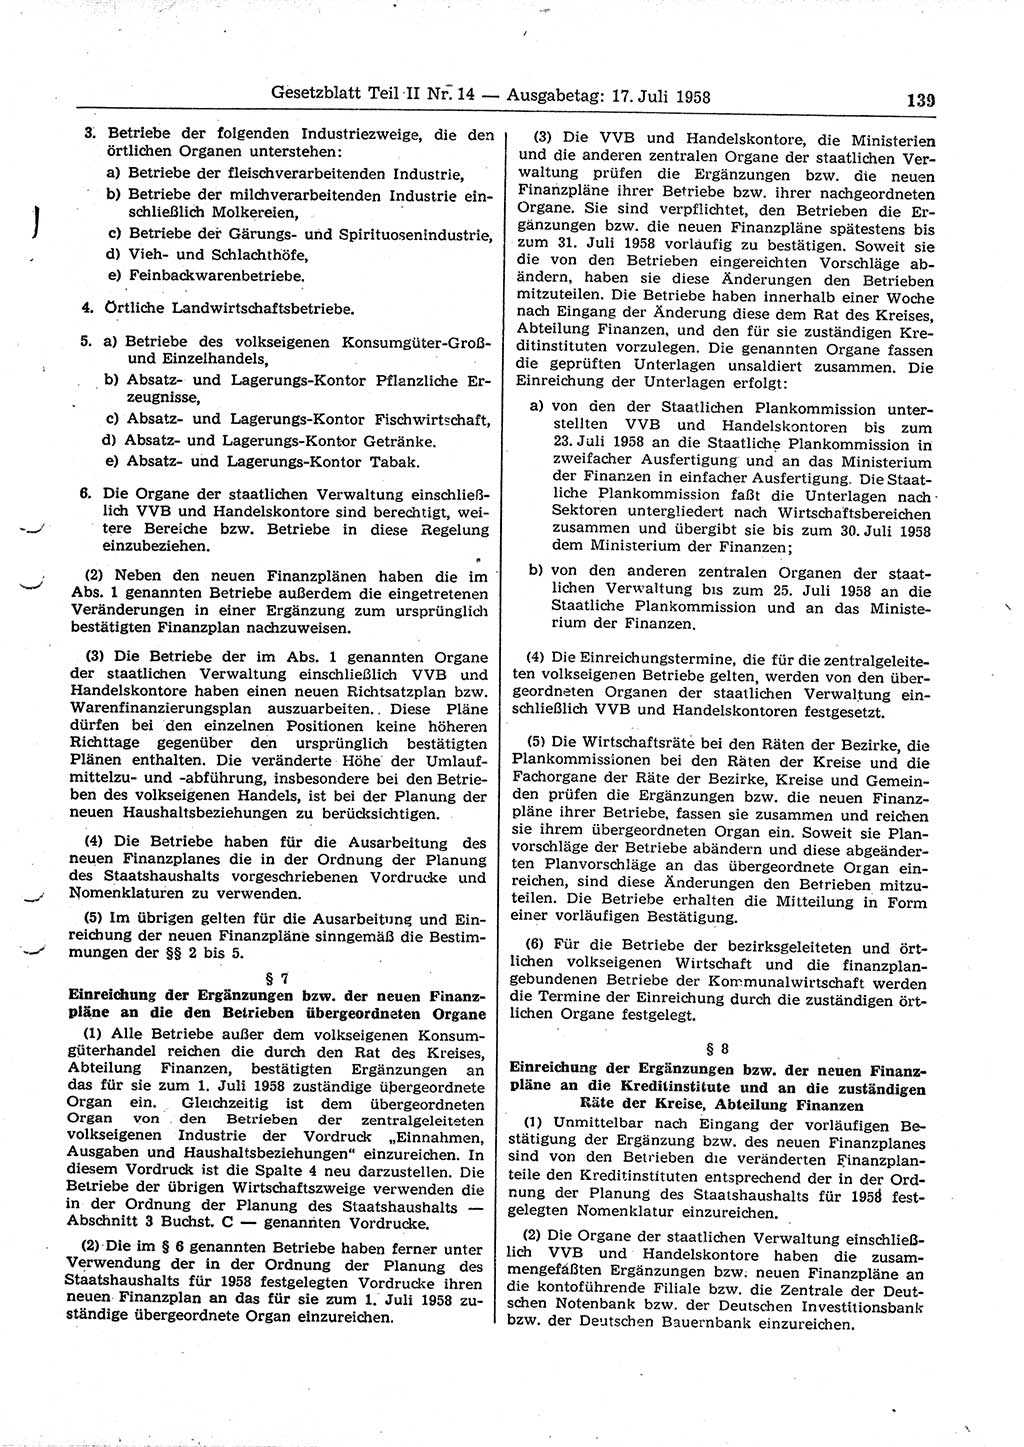 Gesetzblatt (GBl.) der Deutschen Demokratischen Republik (DDR) Teil ⅠⅠ 1958, Seite 139 (GBl. DDR ⅠⅠ 1958, S. 139)